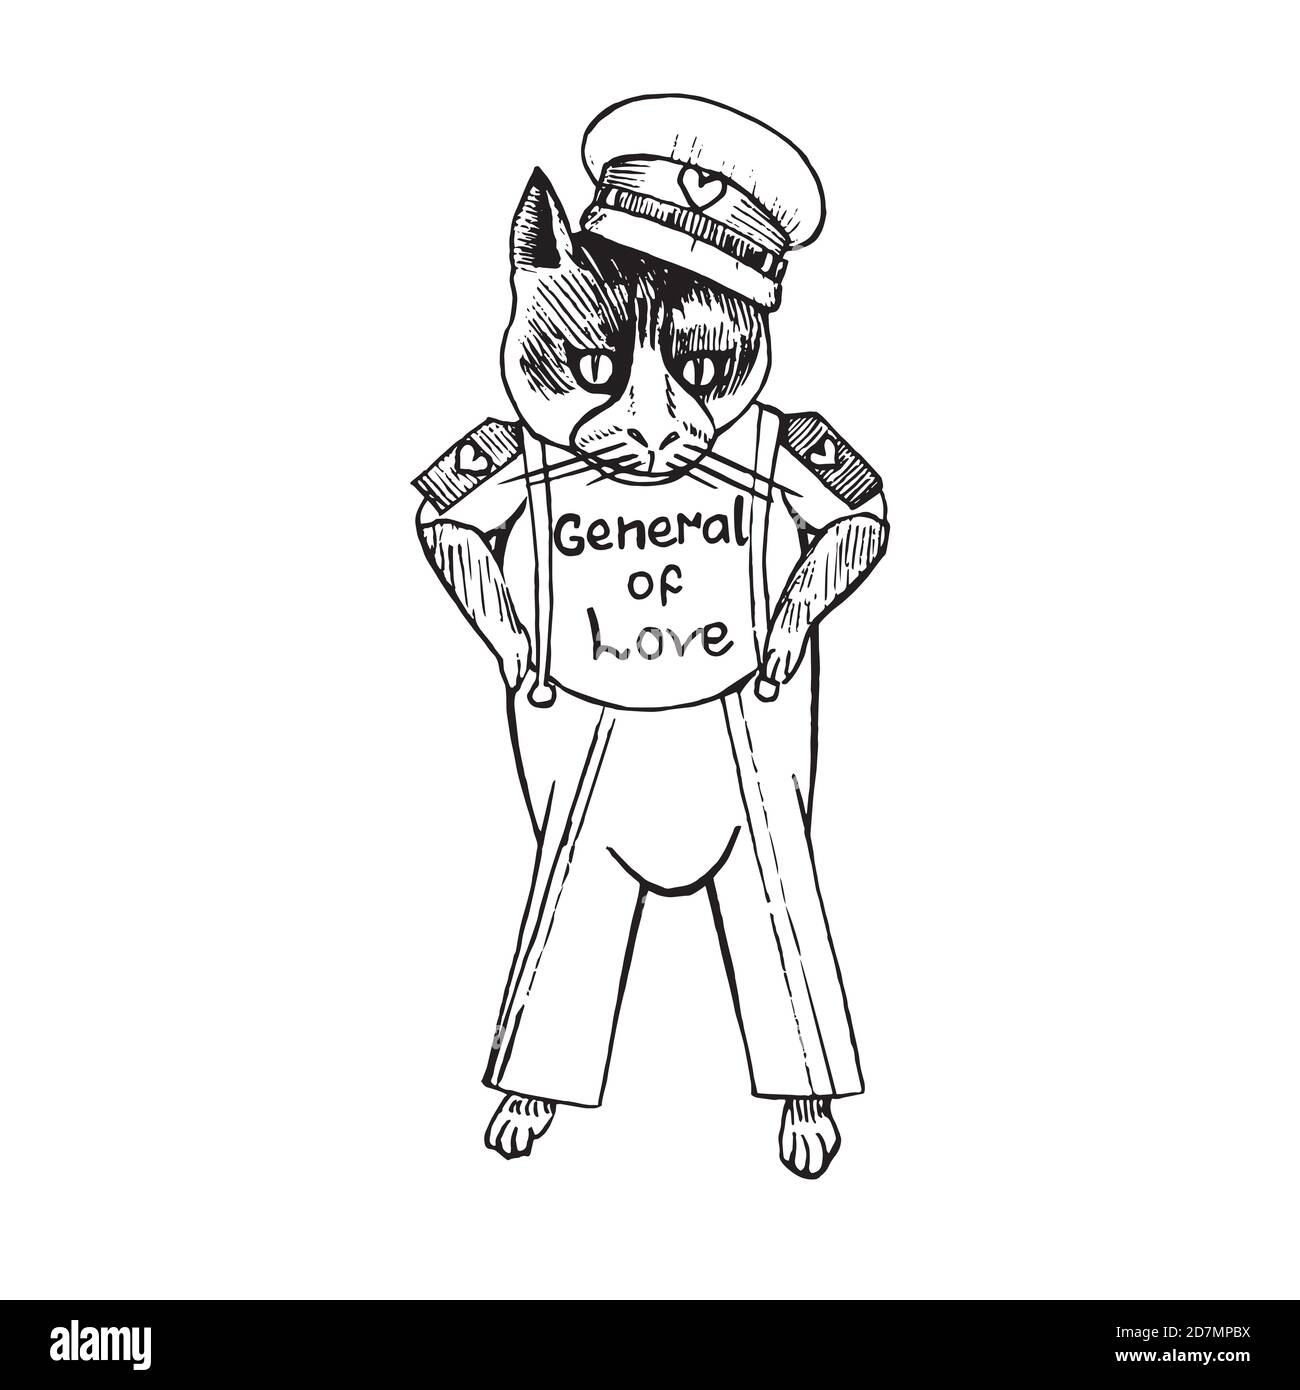 Zeichentrickfigur der funky Katze in sowjetischer Militärform mit Inschrift "General der Liebe", handgezeichnete Doodle-Skizze, isolierte Umrisse illustrat ion Stockfoto